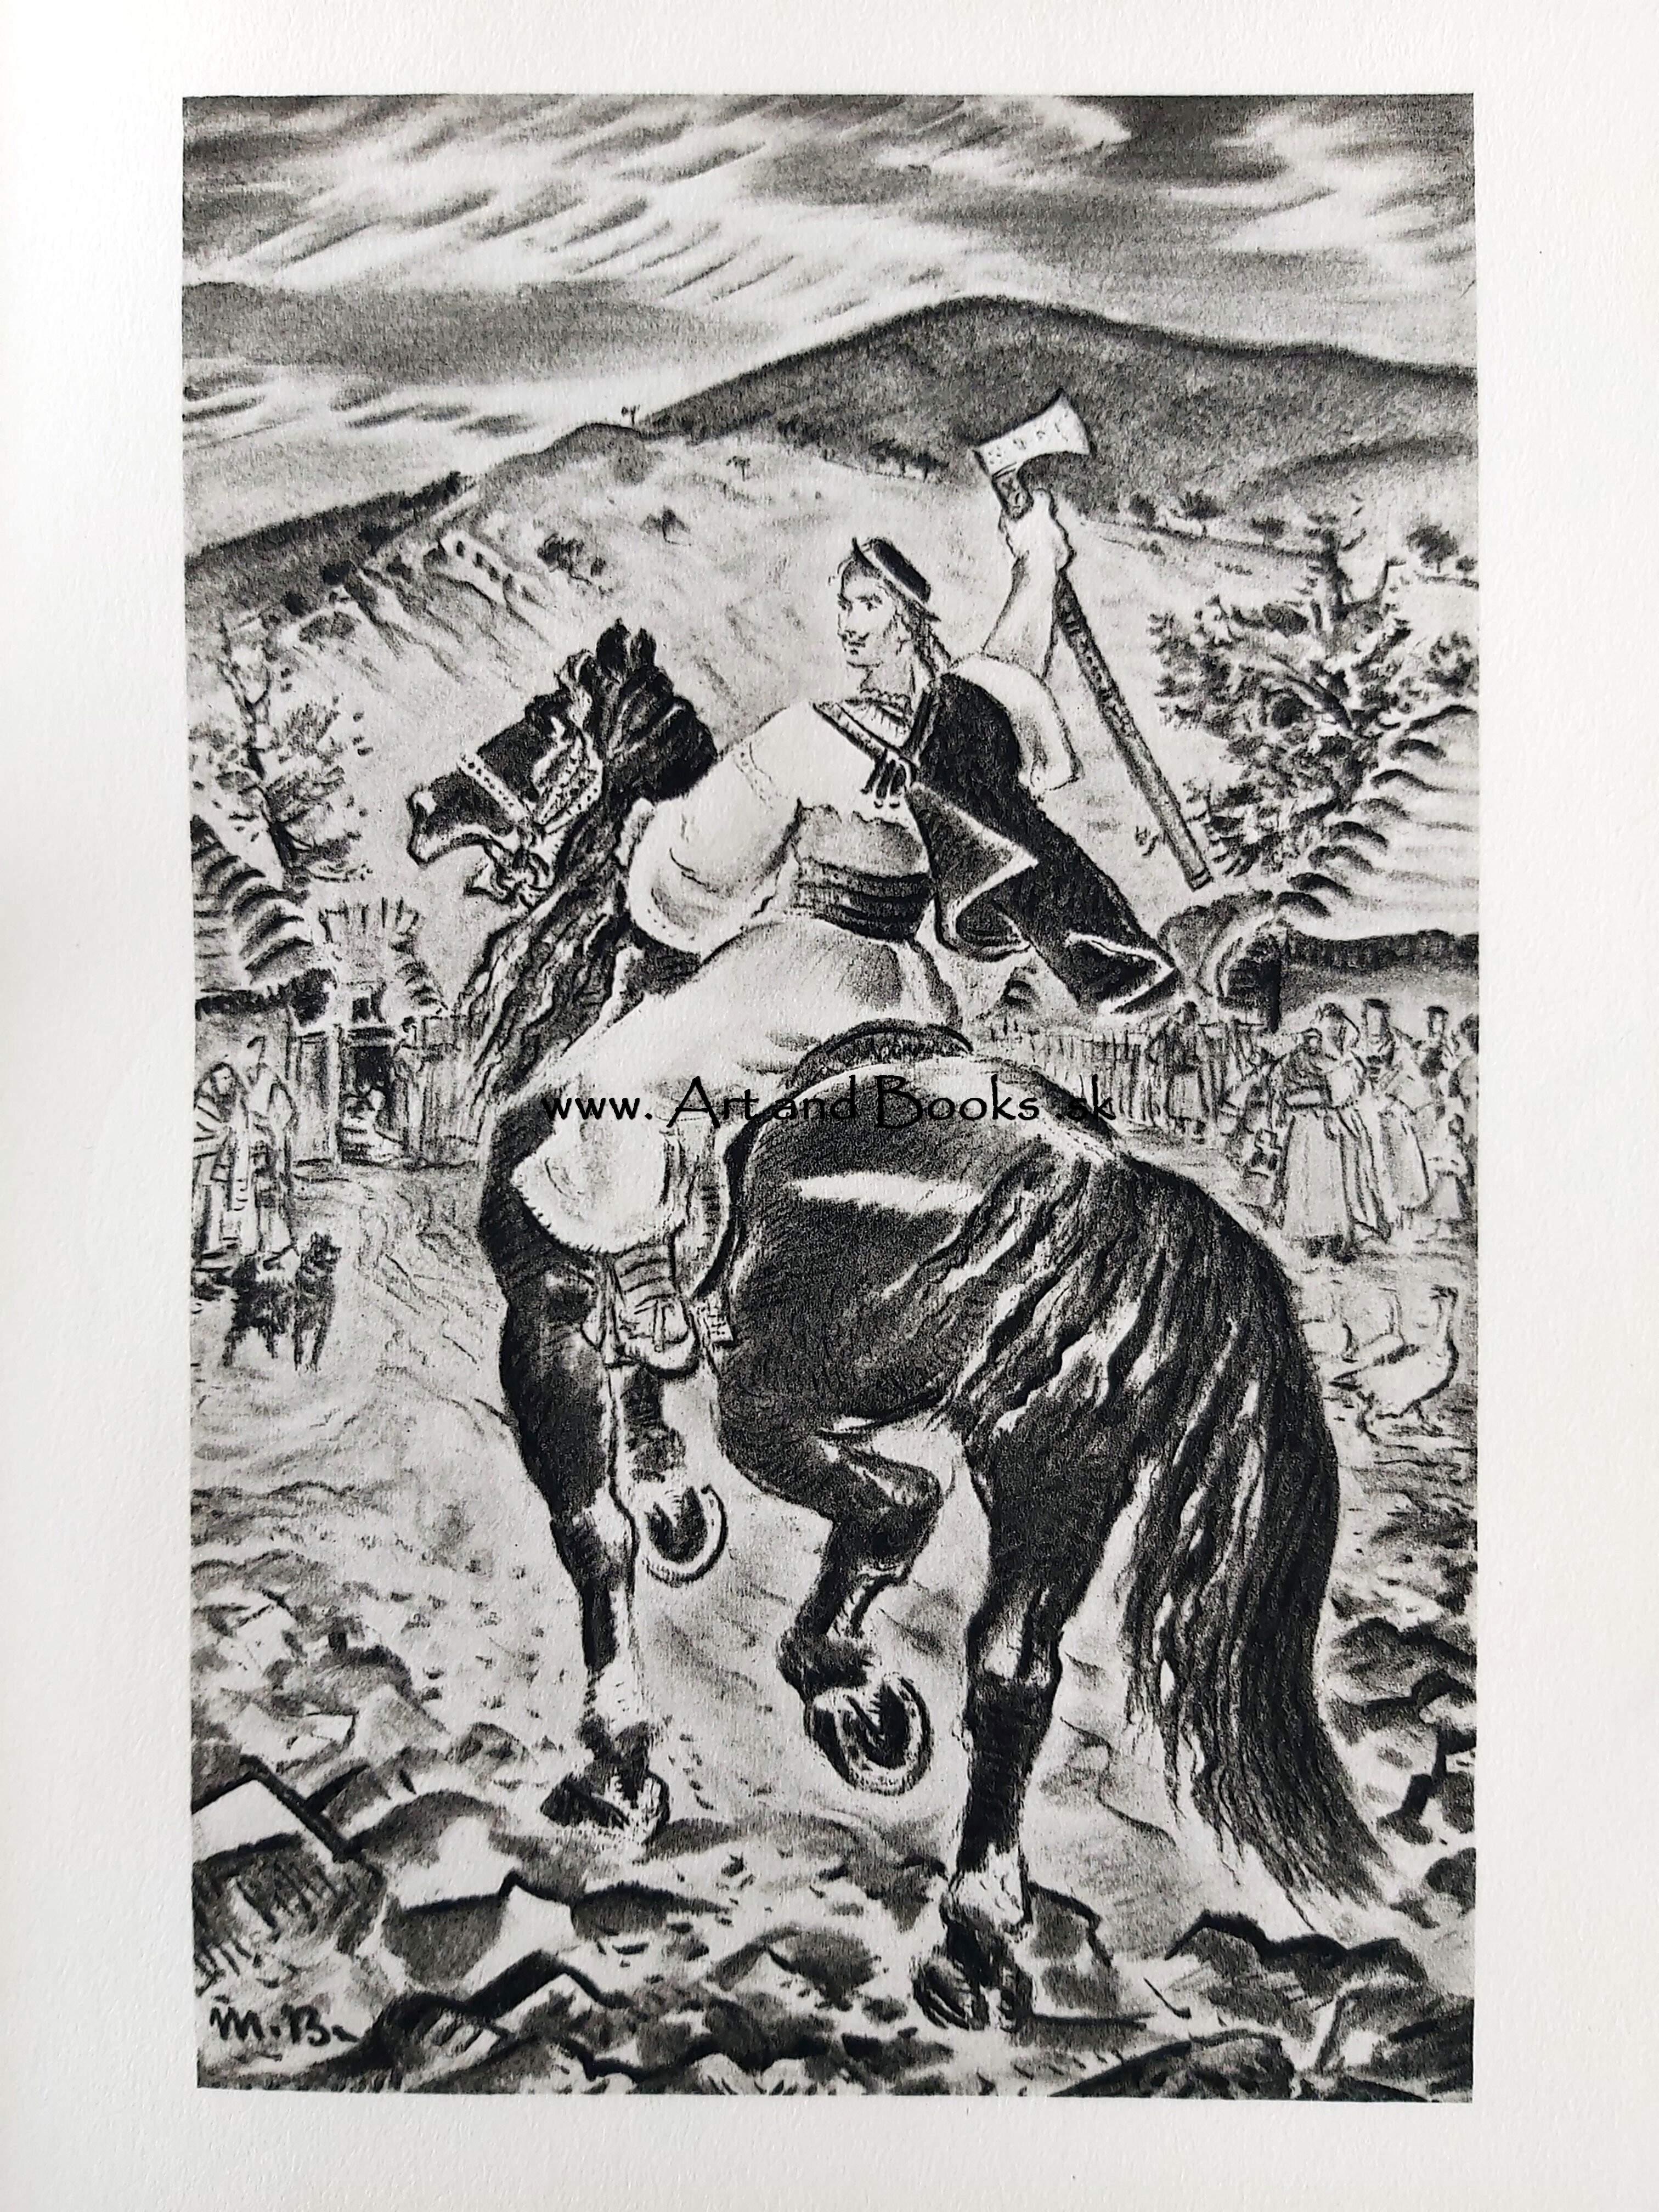 Andrej Sládkovič - Detvan (1943) (sold/predané) ● 143049